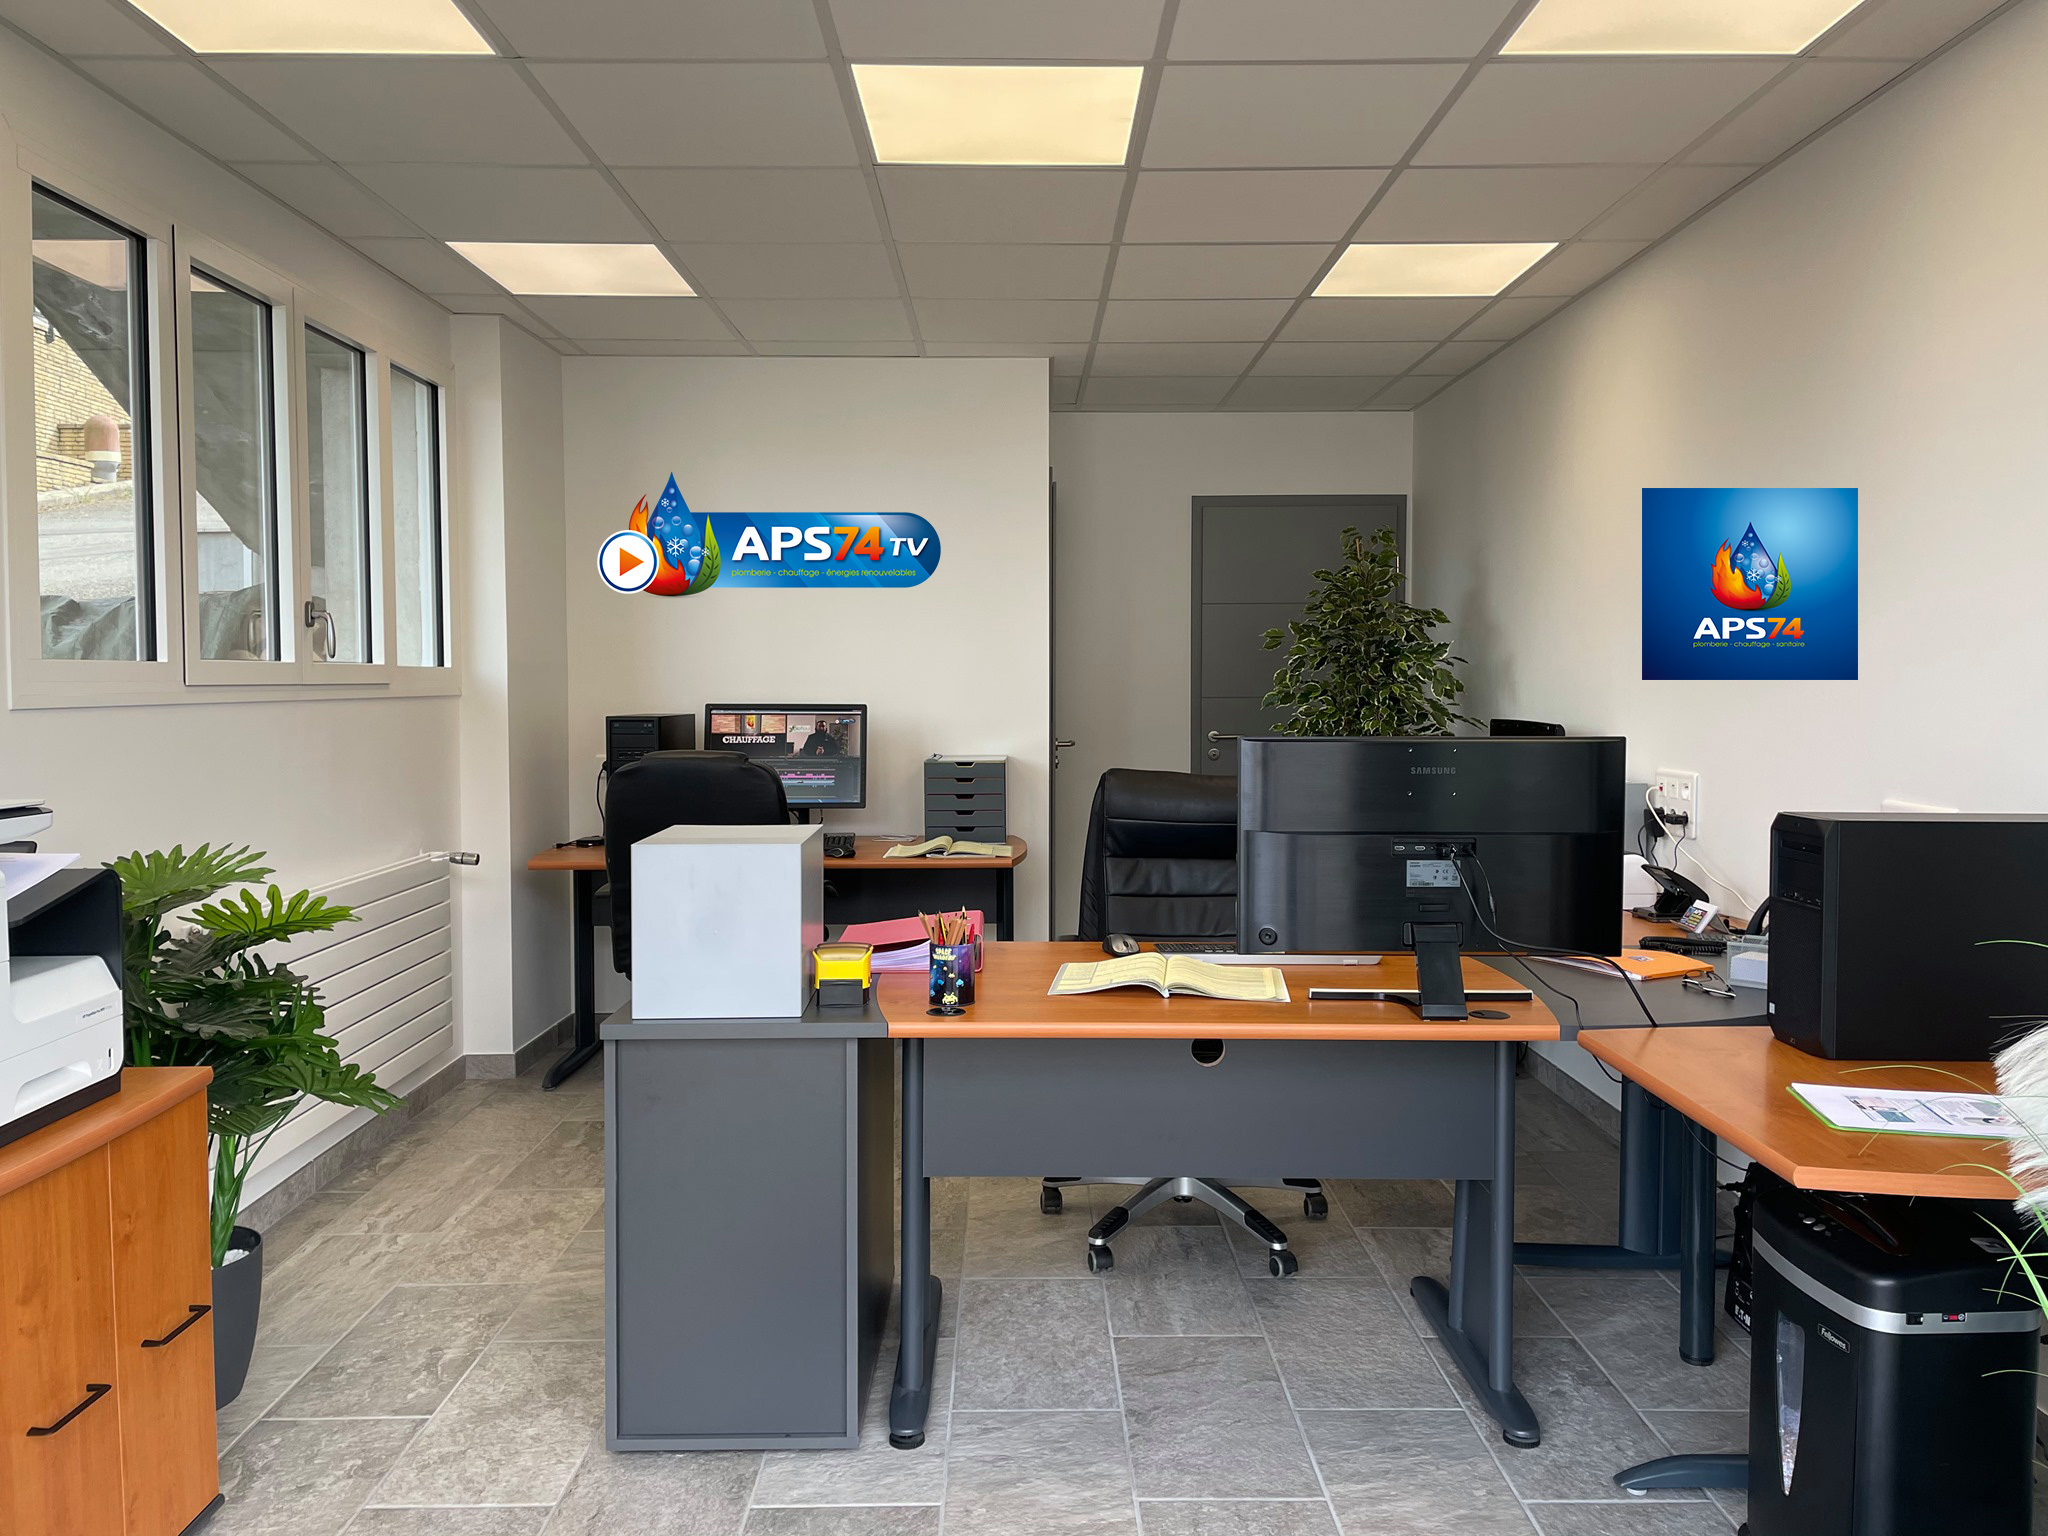 Photo des bureaux de APS74